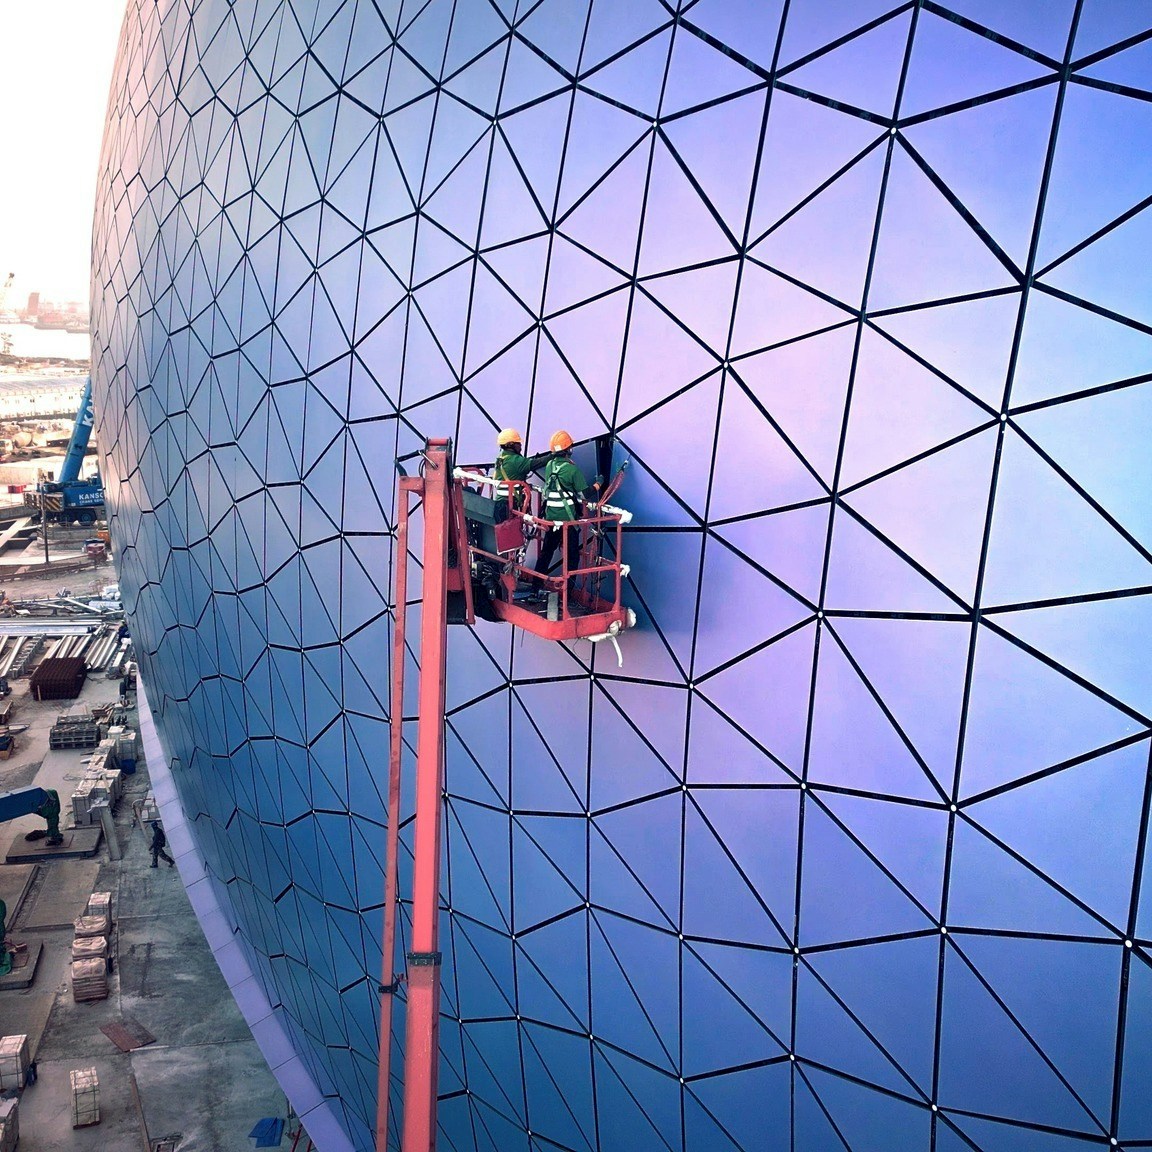 主场馆的表面由约27,000块不同形状的三角形铝质面板组成，外墙颜色能随著光线切入的角度变化而转变，呈现出幻彩蓝、耀目紫和闪烁银等多种色彩。（Facebook「飞越启德」群组图片）